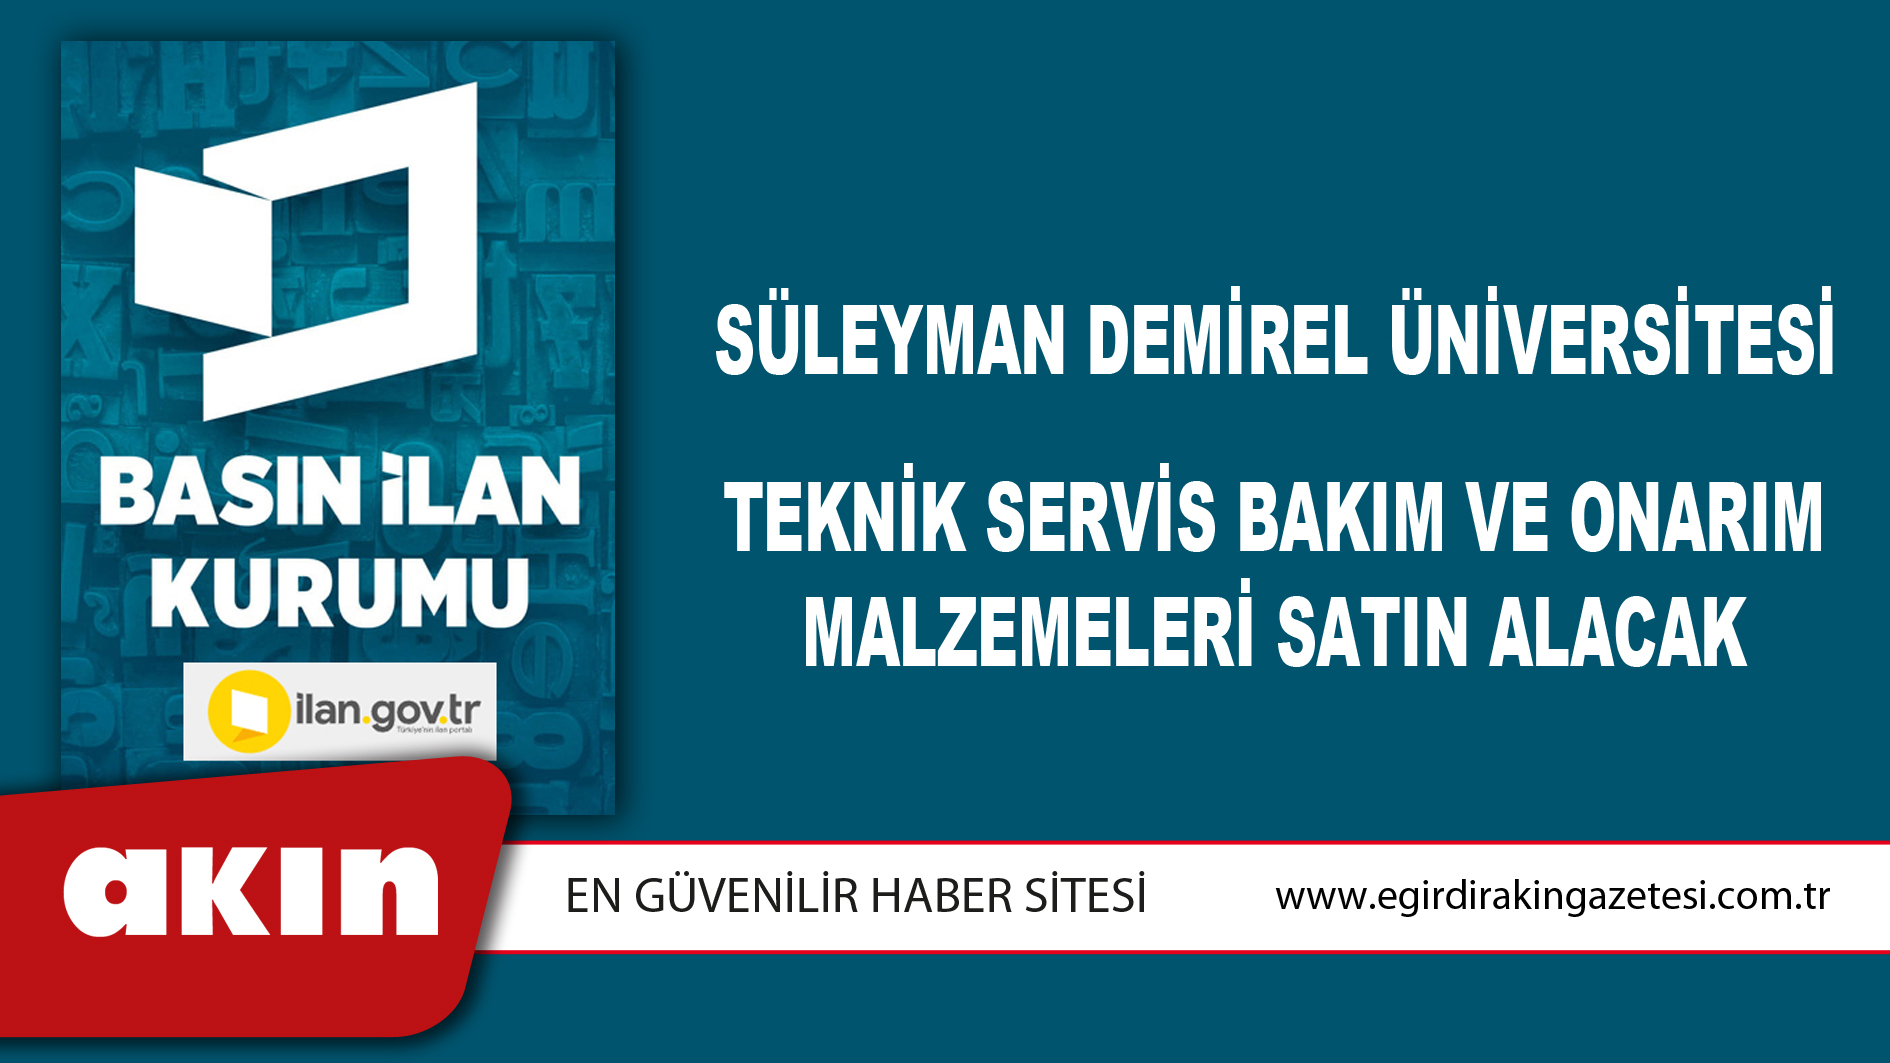 Süleyman Demirel Üniversitesi Teknik Servis Bakım Ve Onarım Malzemeleri Satın Alacak